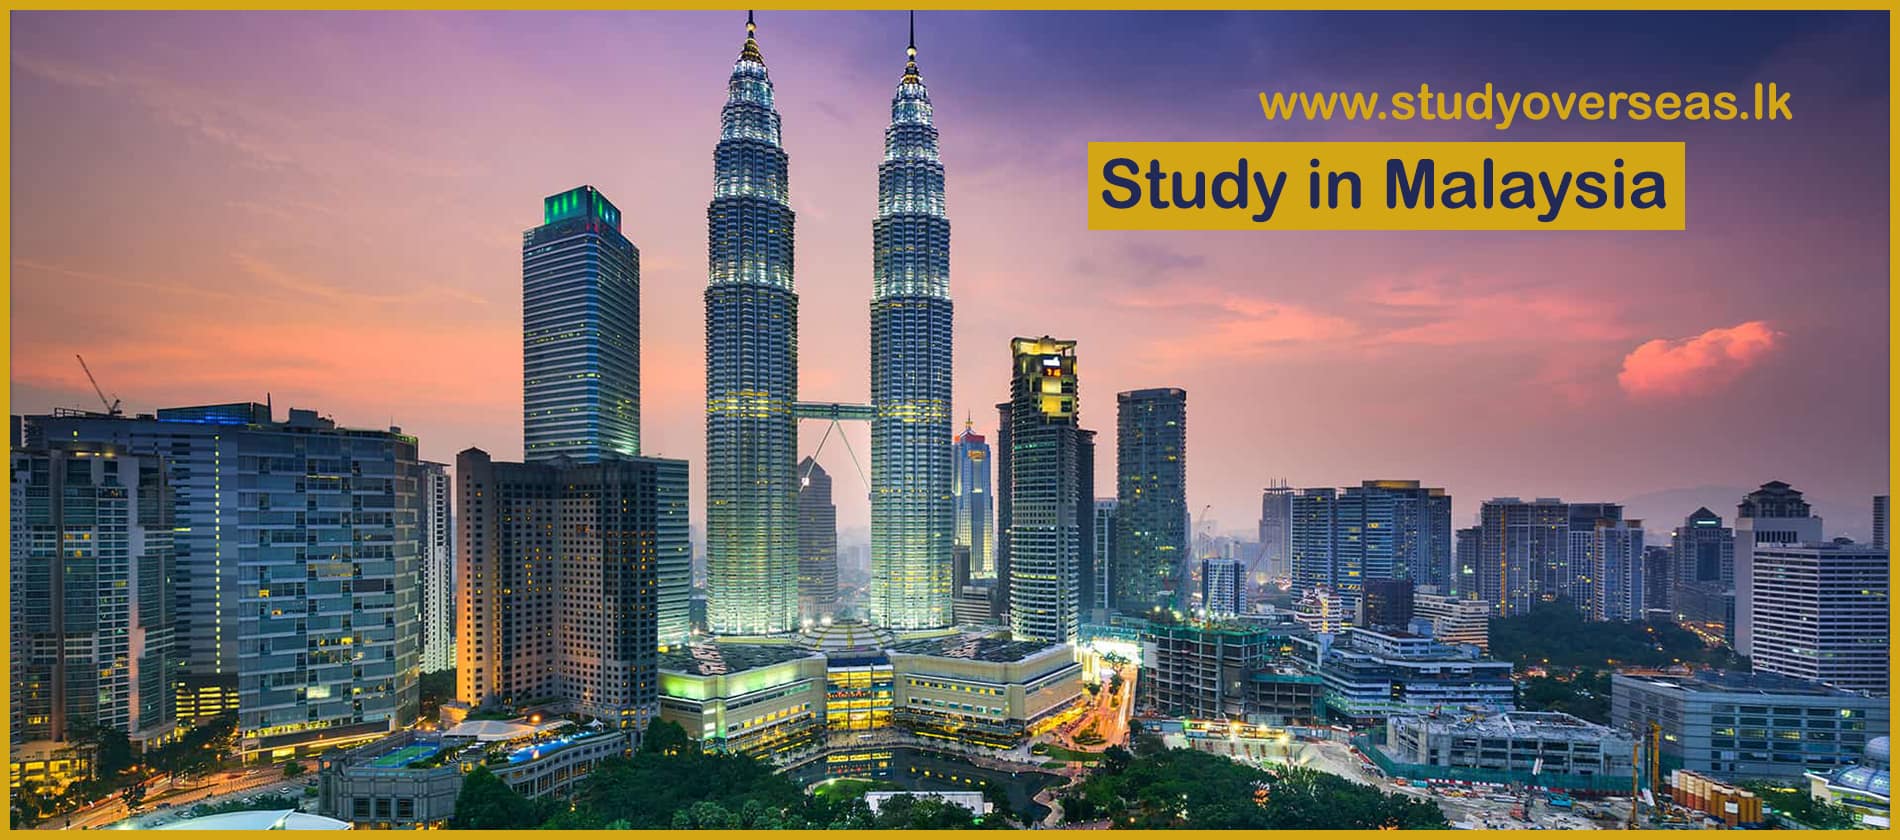 study_in_malaysia_www.studyoverseas.lk